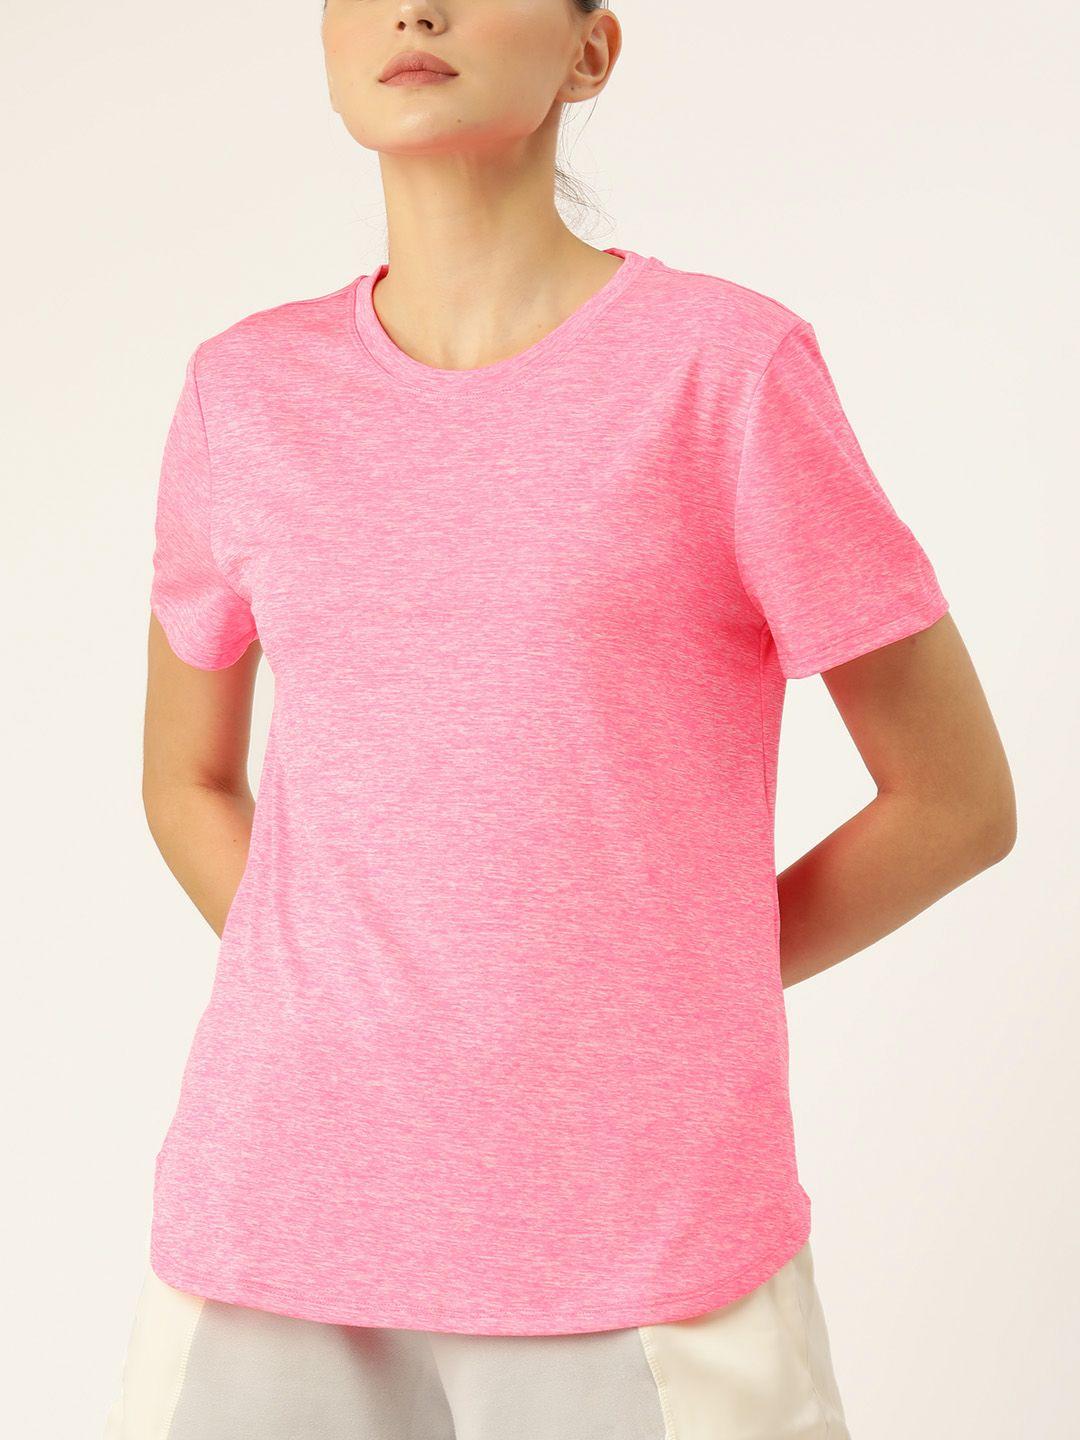 macy's ideology women pink t-shirt